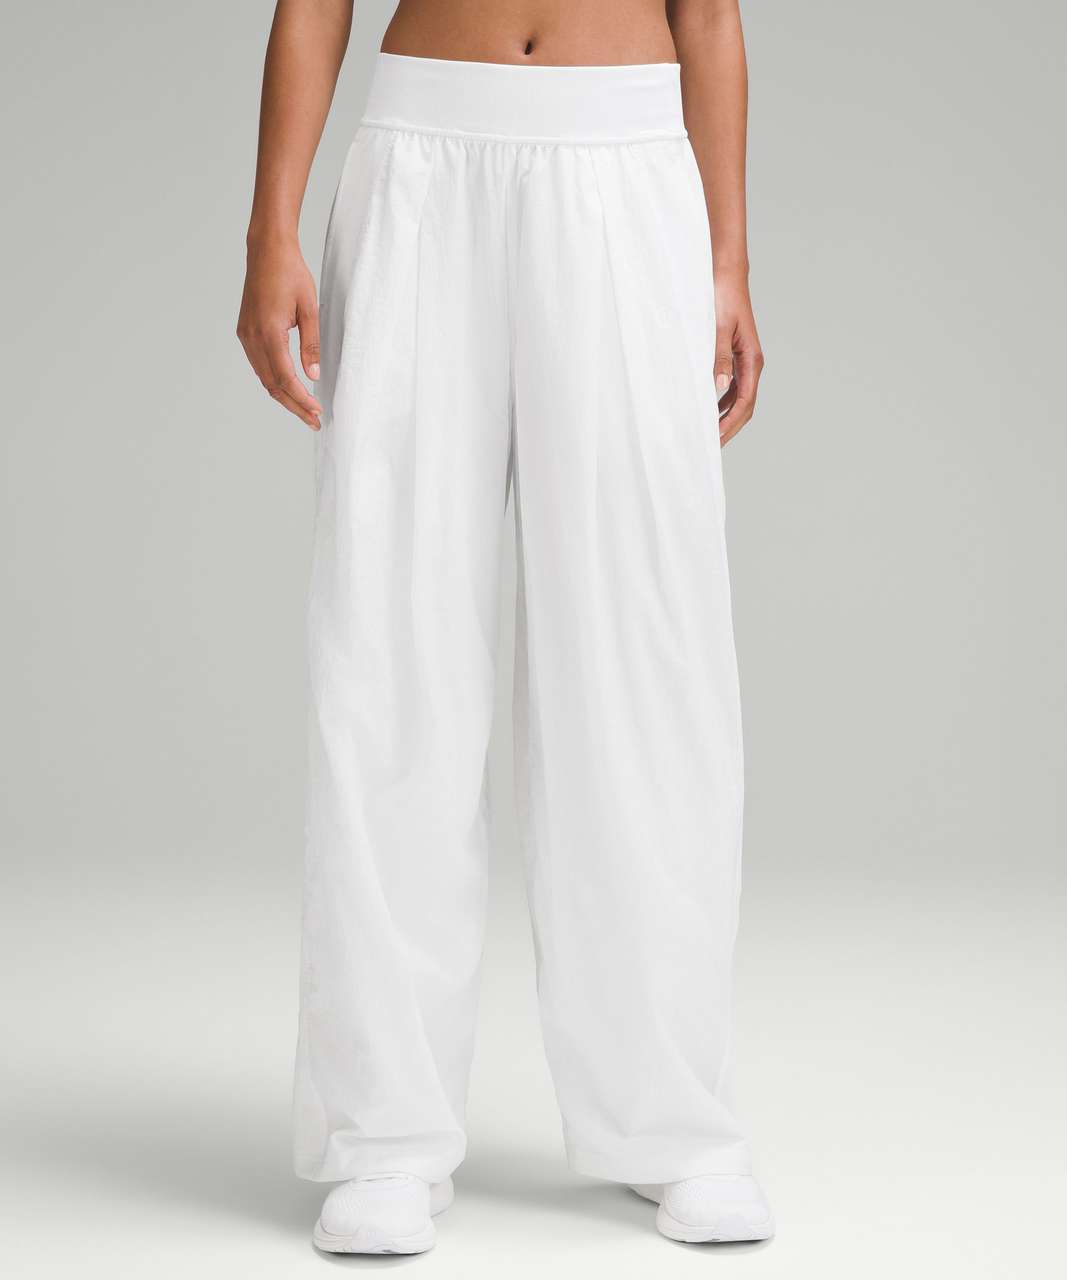 Lululemon Lightweight Tennis Mid-Rise Track Pants *Full Length - White